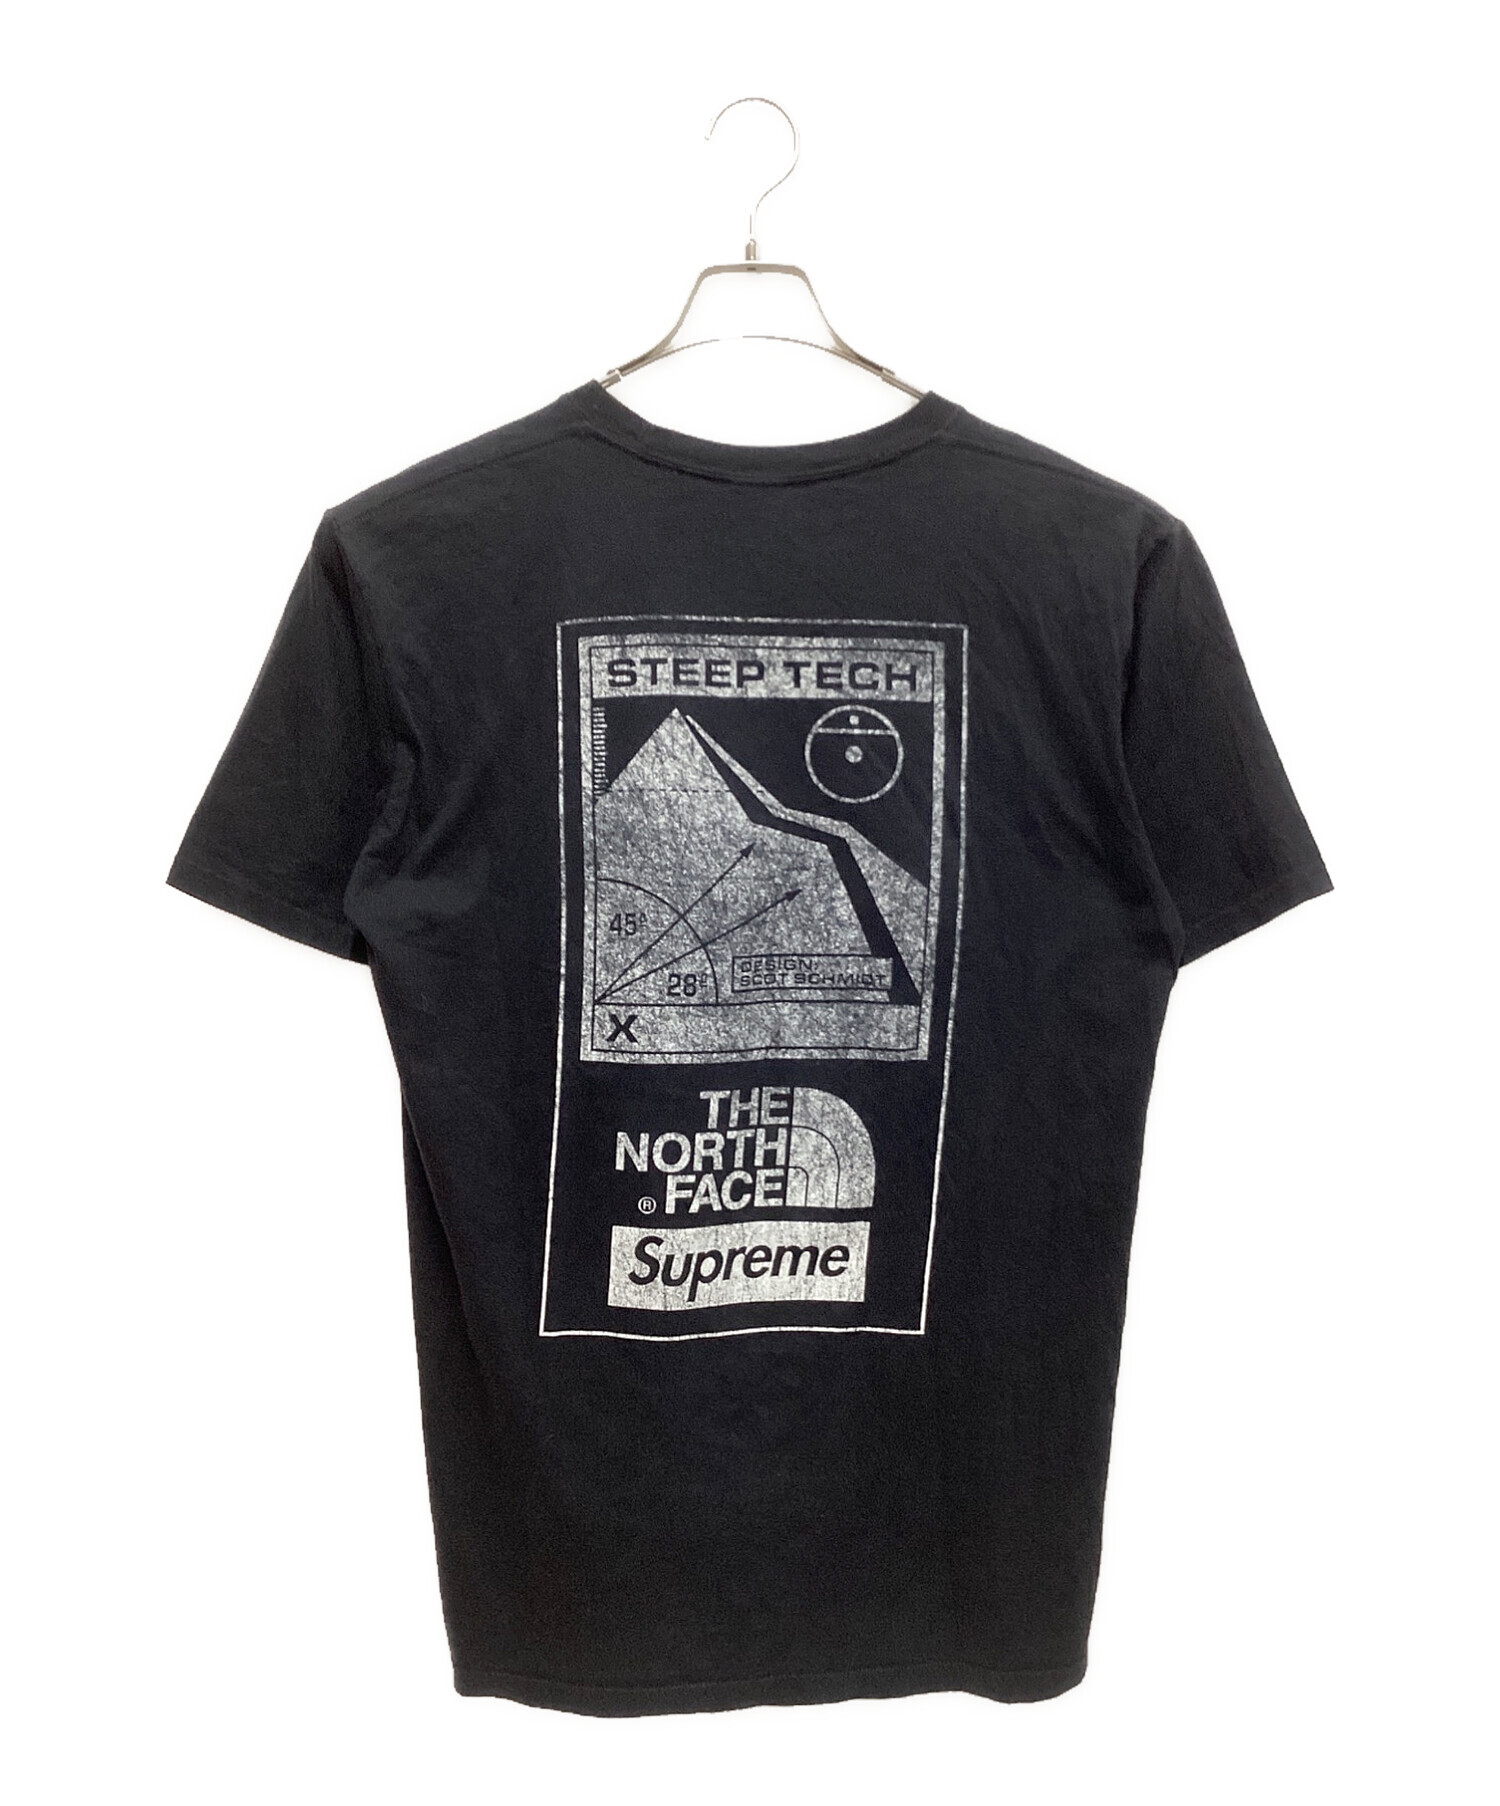 THE NORTH FACE (ザ ノース フェイス) SUPREME (シュプリーム) Steep Tech Tee Shirt ブラック サイズ:M